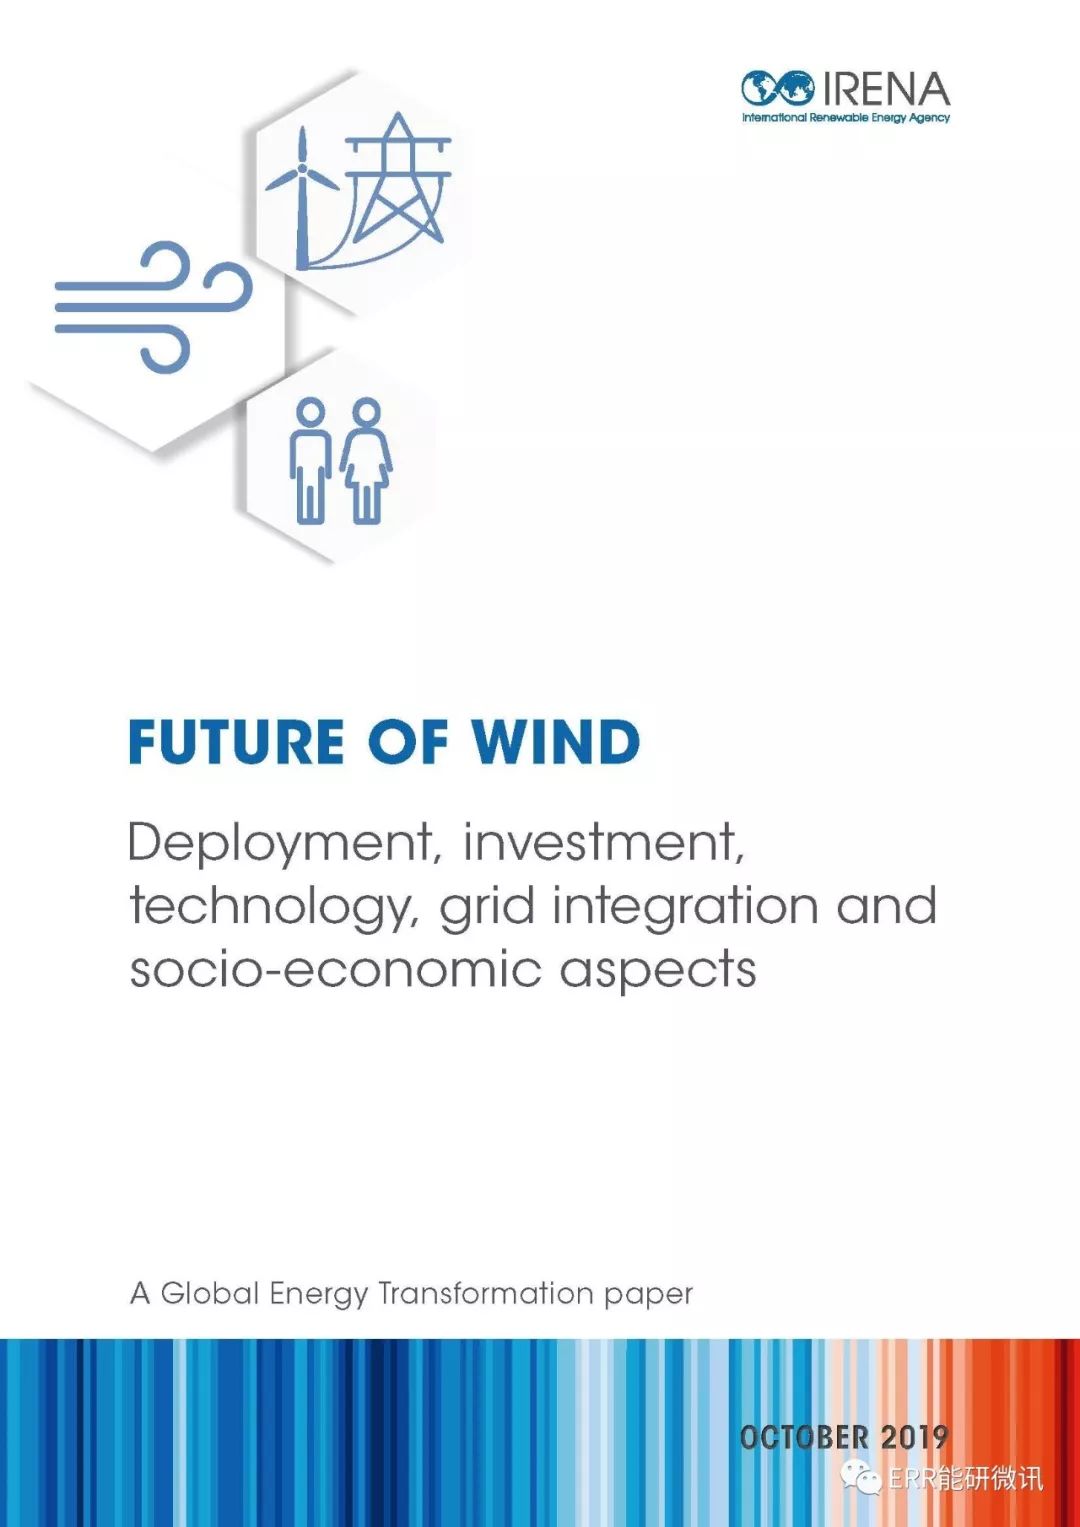 风电的未来—风电的开发利用、投资、技术、并网以及社会经济效益（特别推荐）